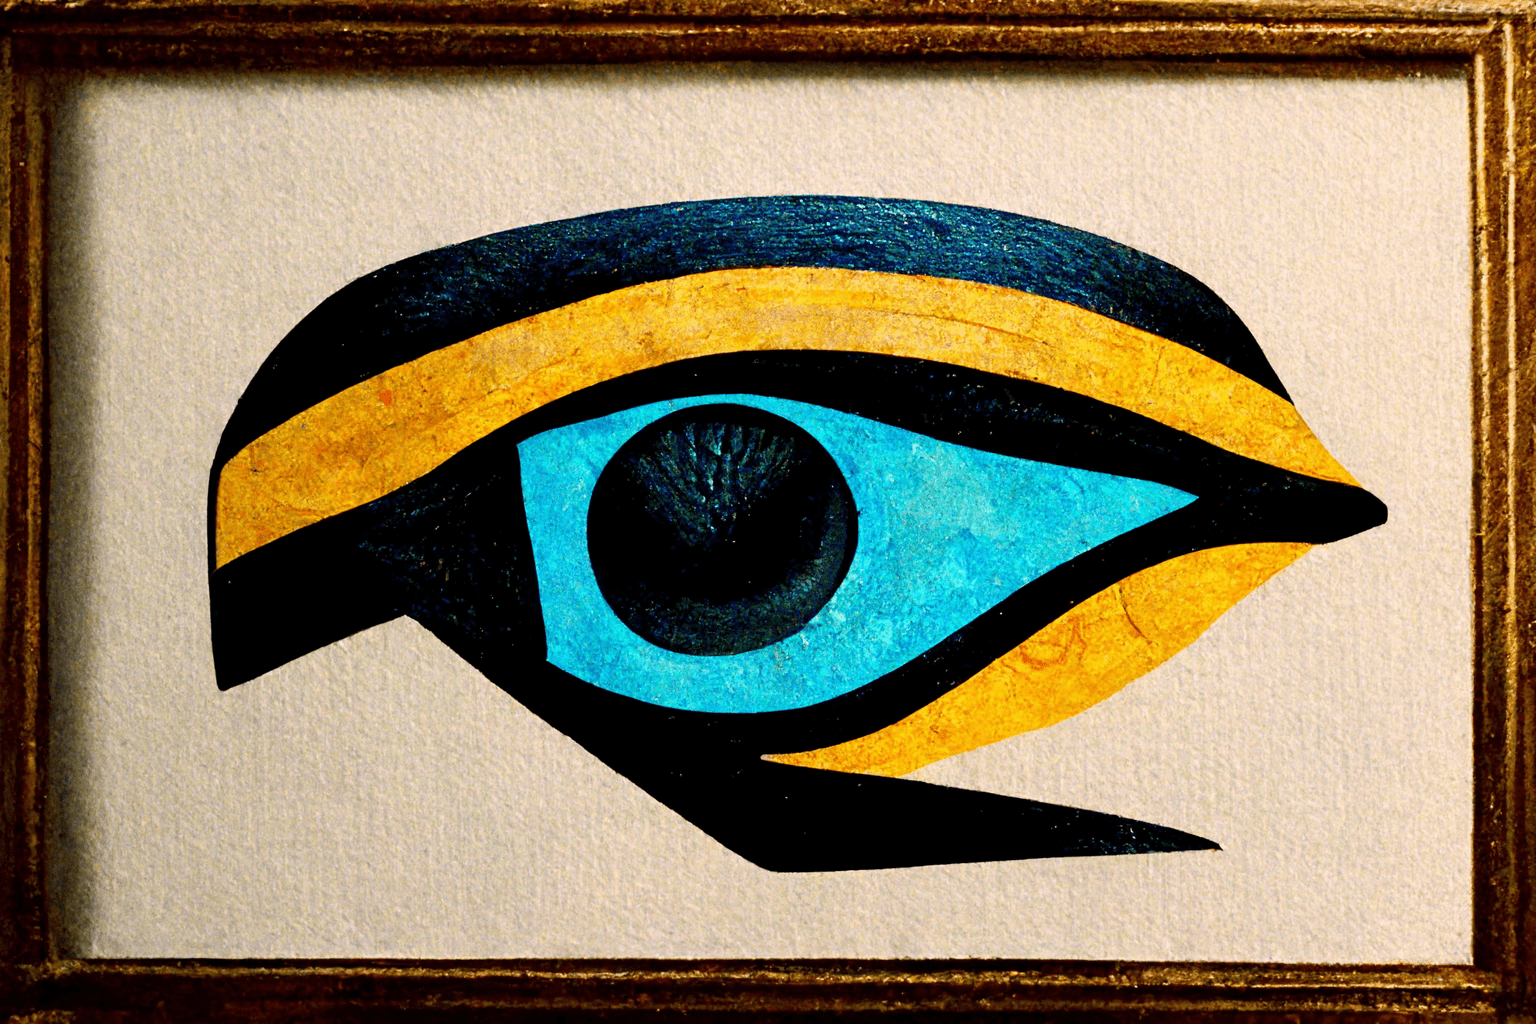 The eye of Ra